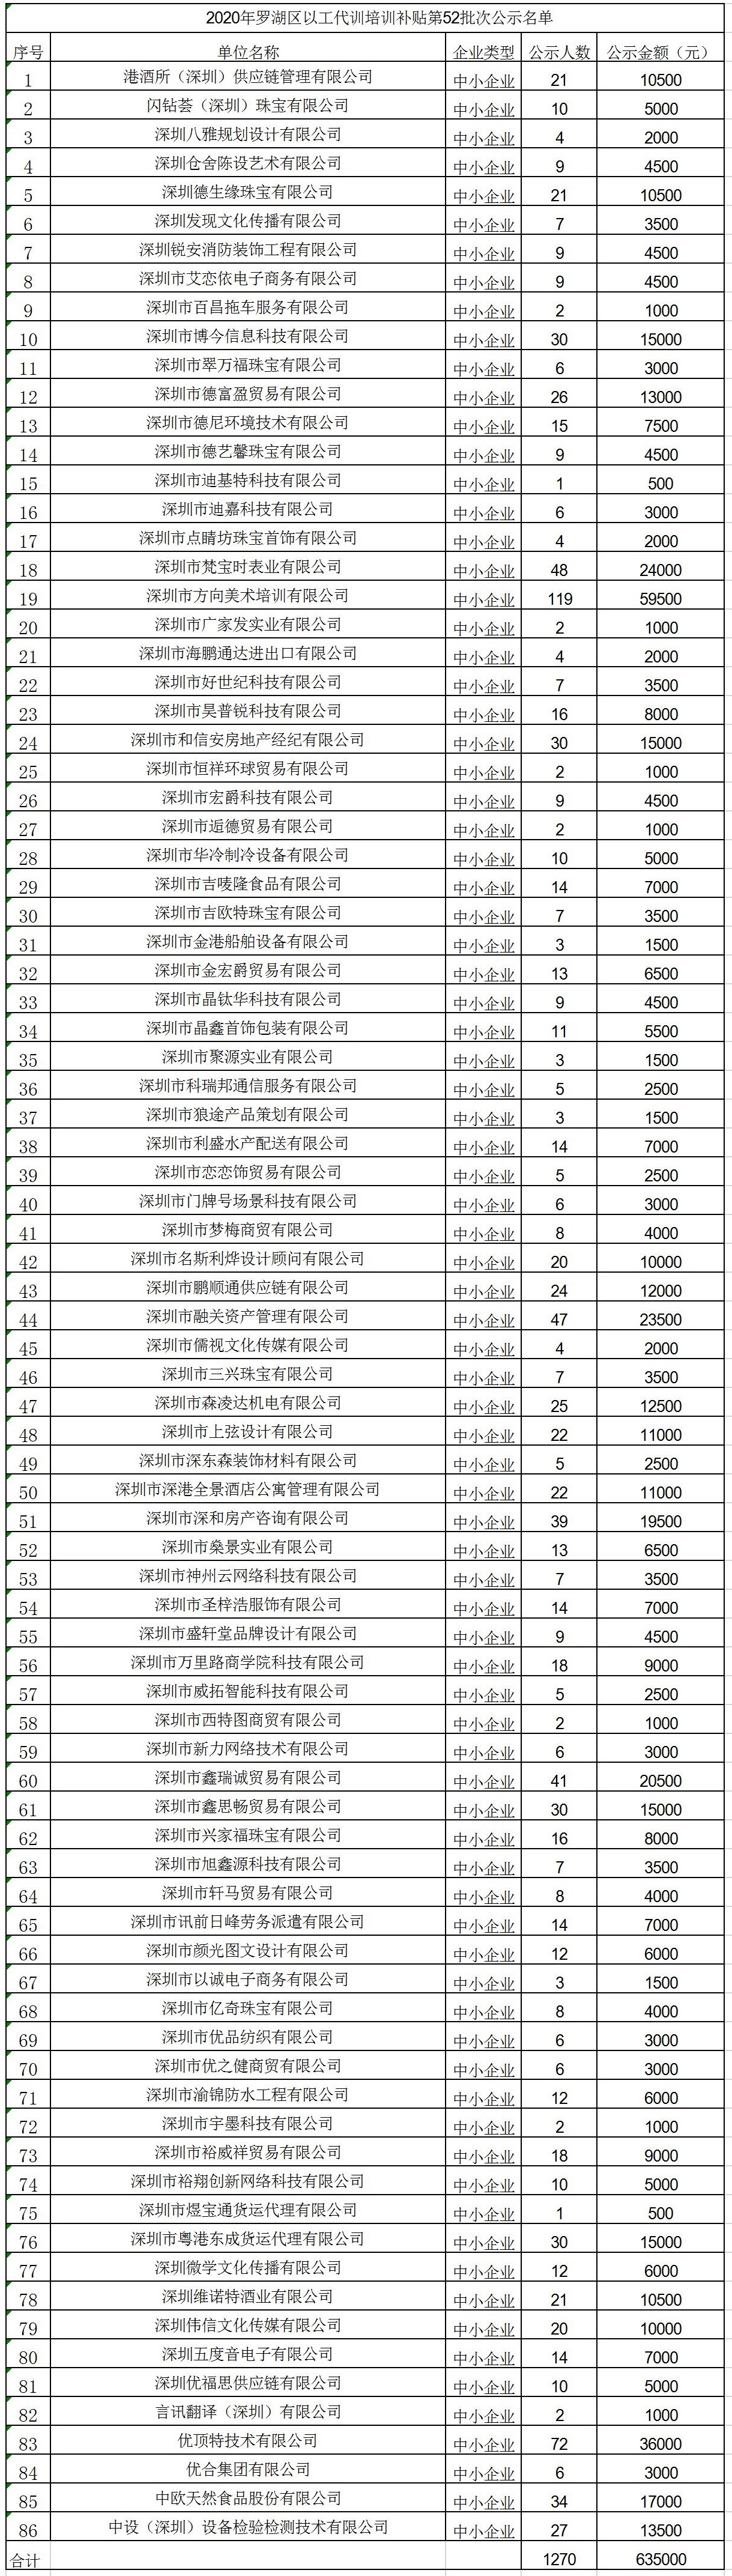 2020年深圳市罗湖区以工代训培训补贴第52批次公示名单.jpg